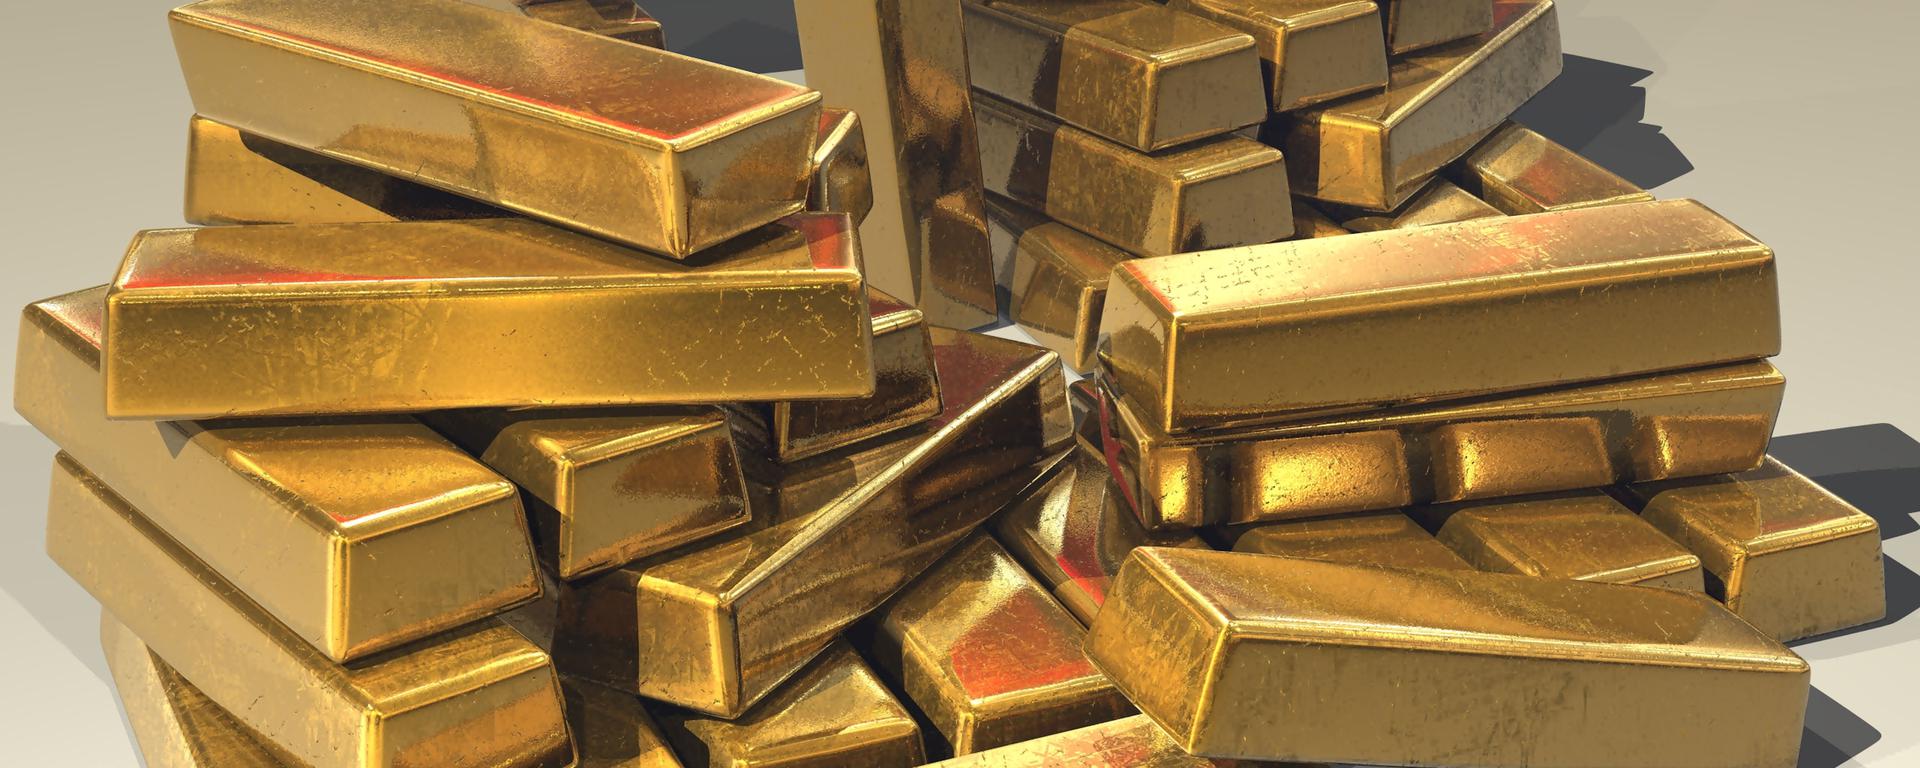 El precio del oro ha subido y ha logrado sostenerse, ¿por qué?